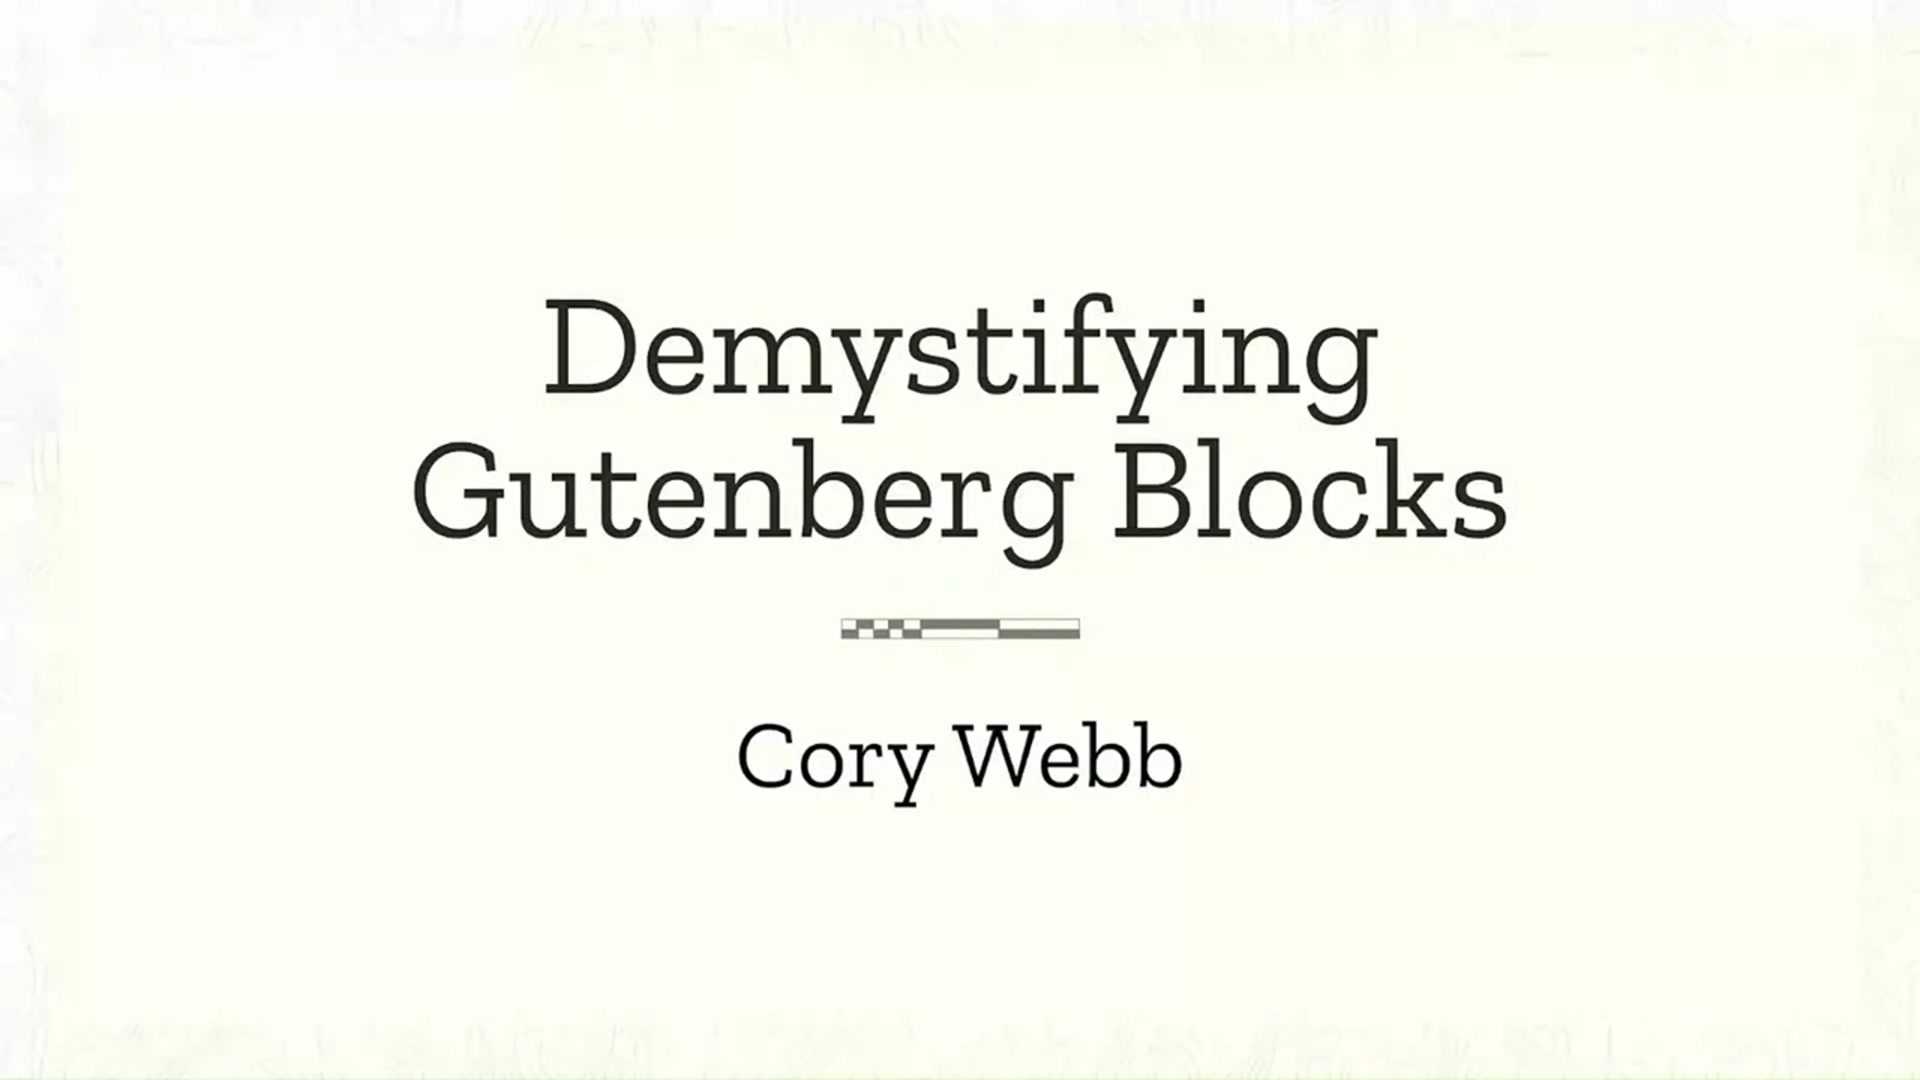 Cory Webb: Demystifying Gutenberg blocks – understanding first steps to becoming a Gutenberg developer